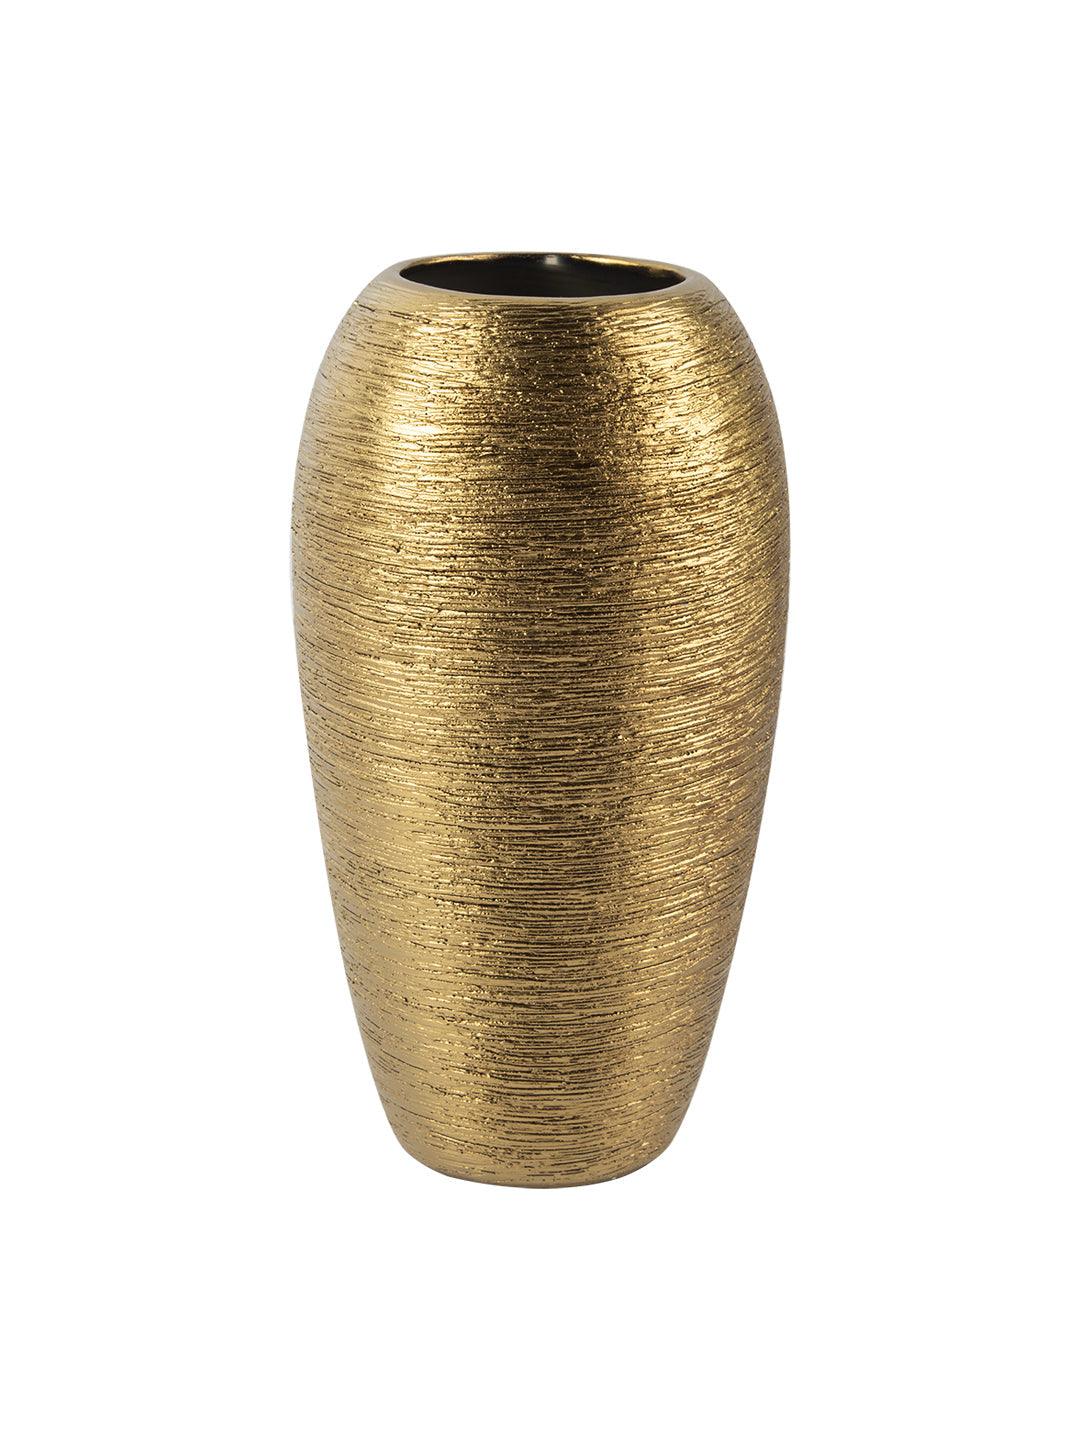 VON CASA Ceramic Gold Oval Shaped Vase - VON CASA